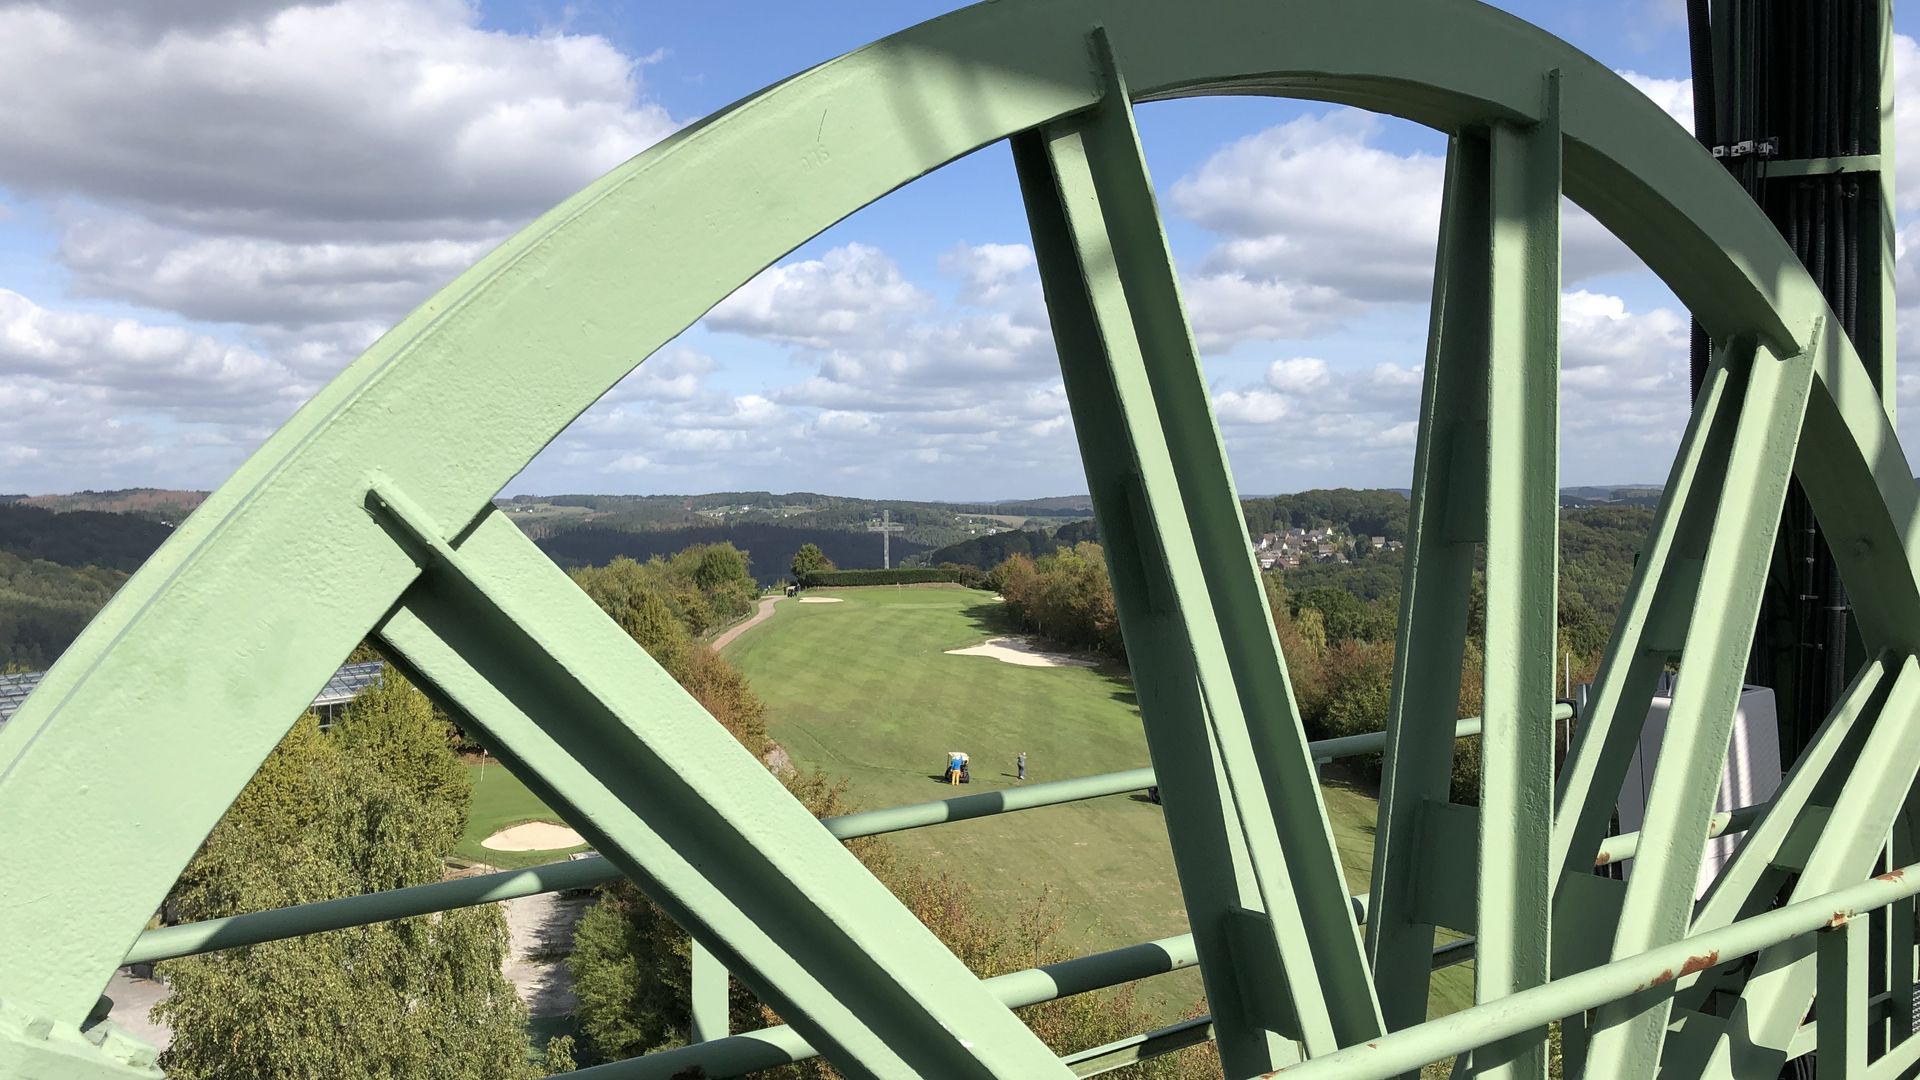 Im Vordergrund ist ein großes hellgrünes Rad vom Förderturm sichtbar. Vom Turm aus blickt man über einen Golfplatz